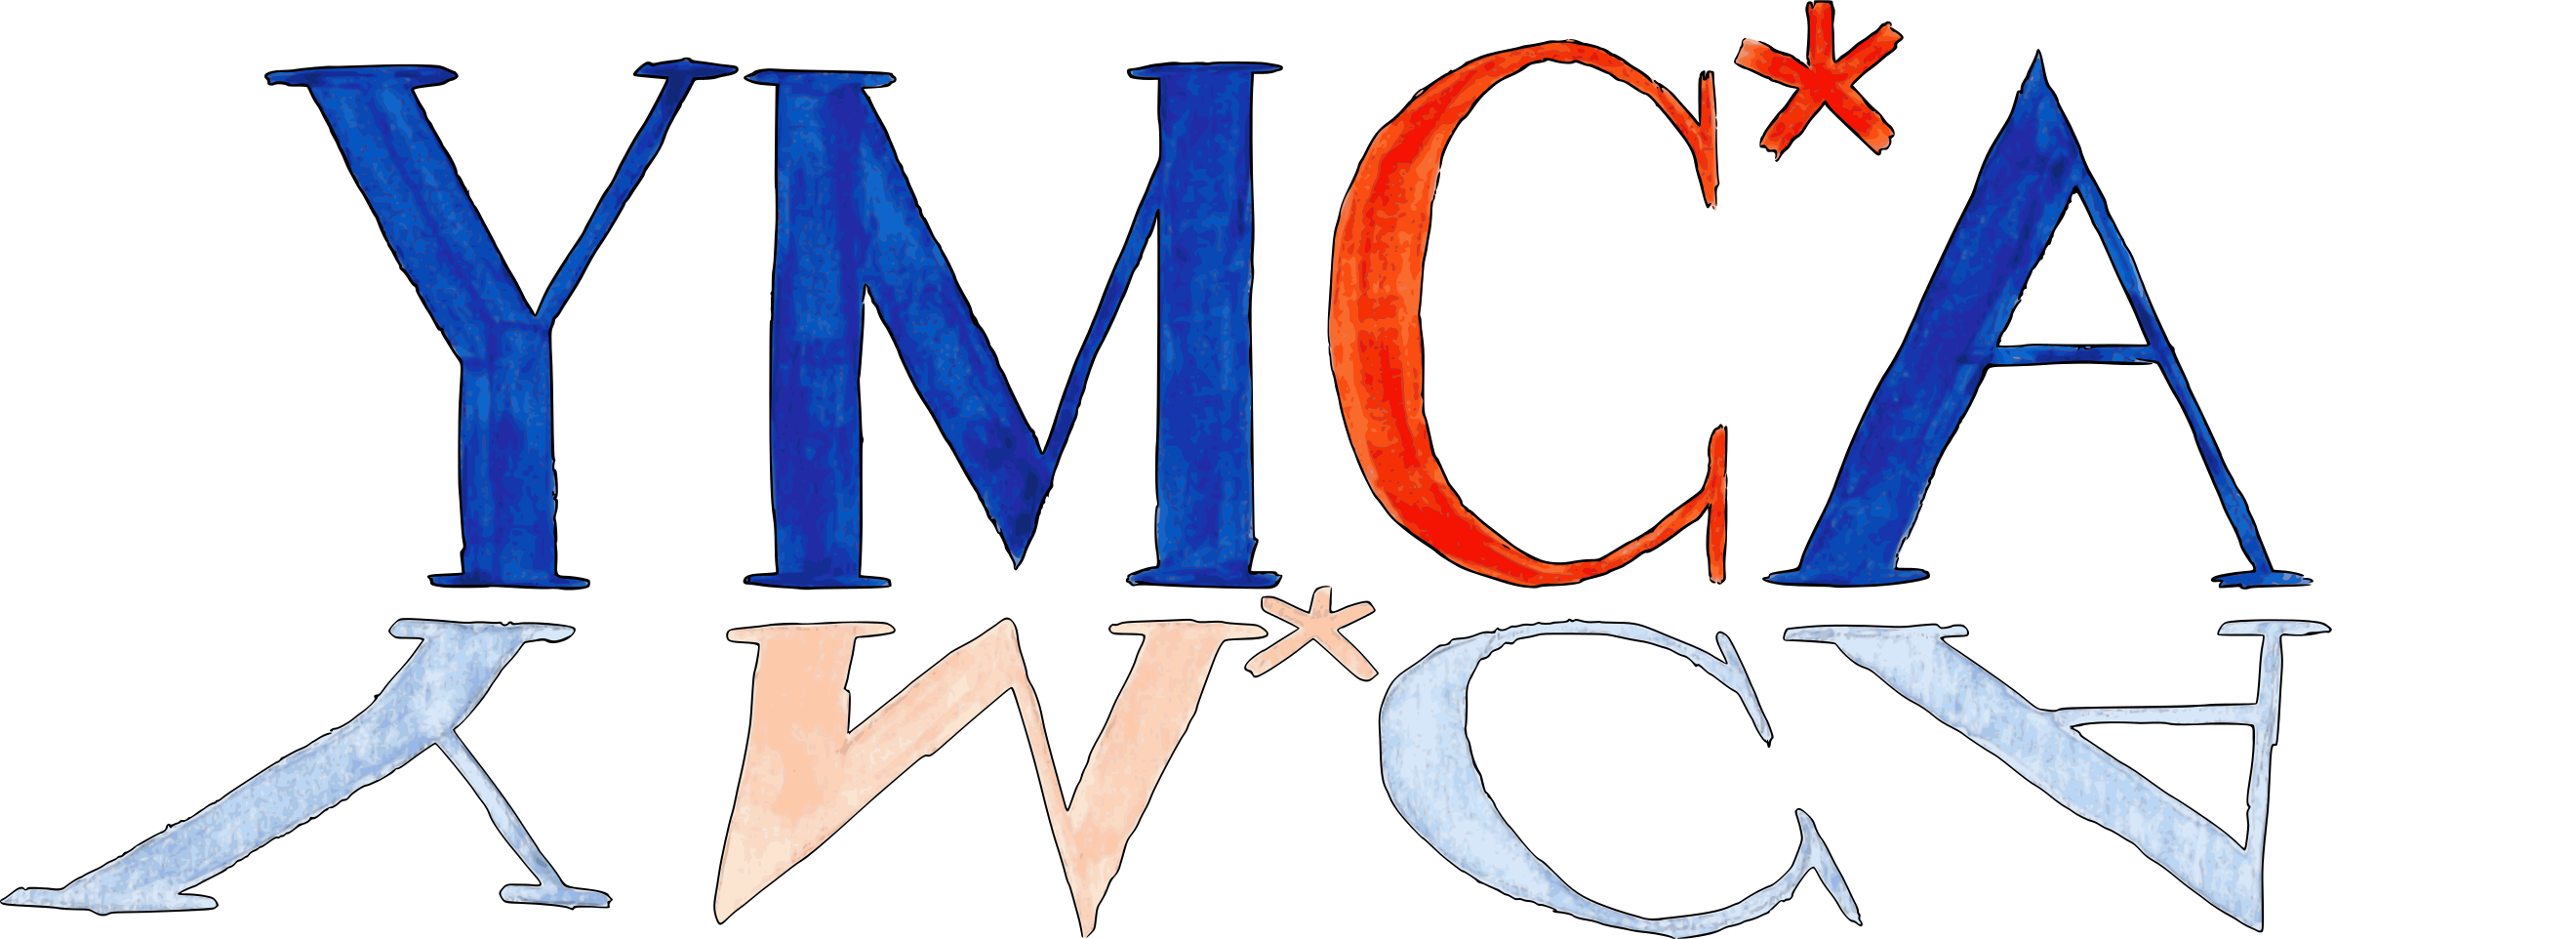 YMC*A logo